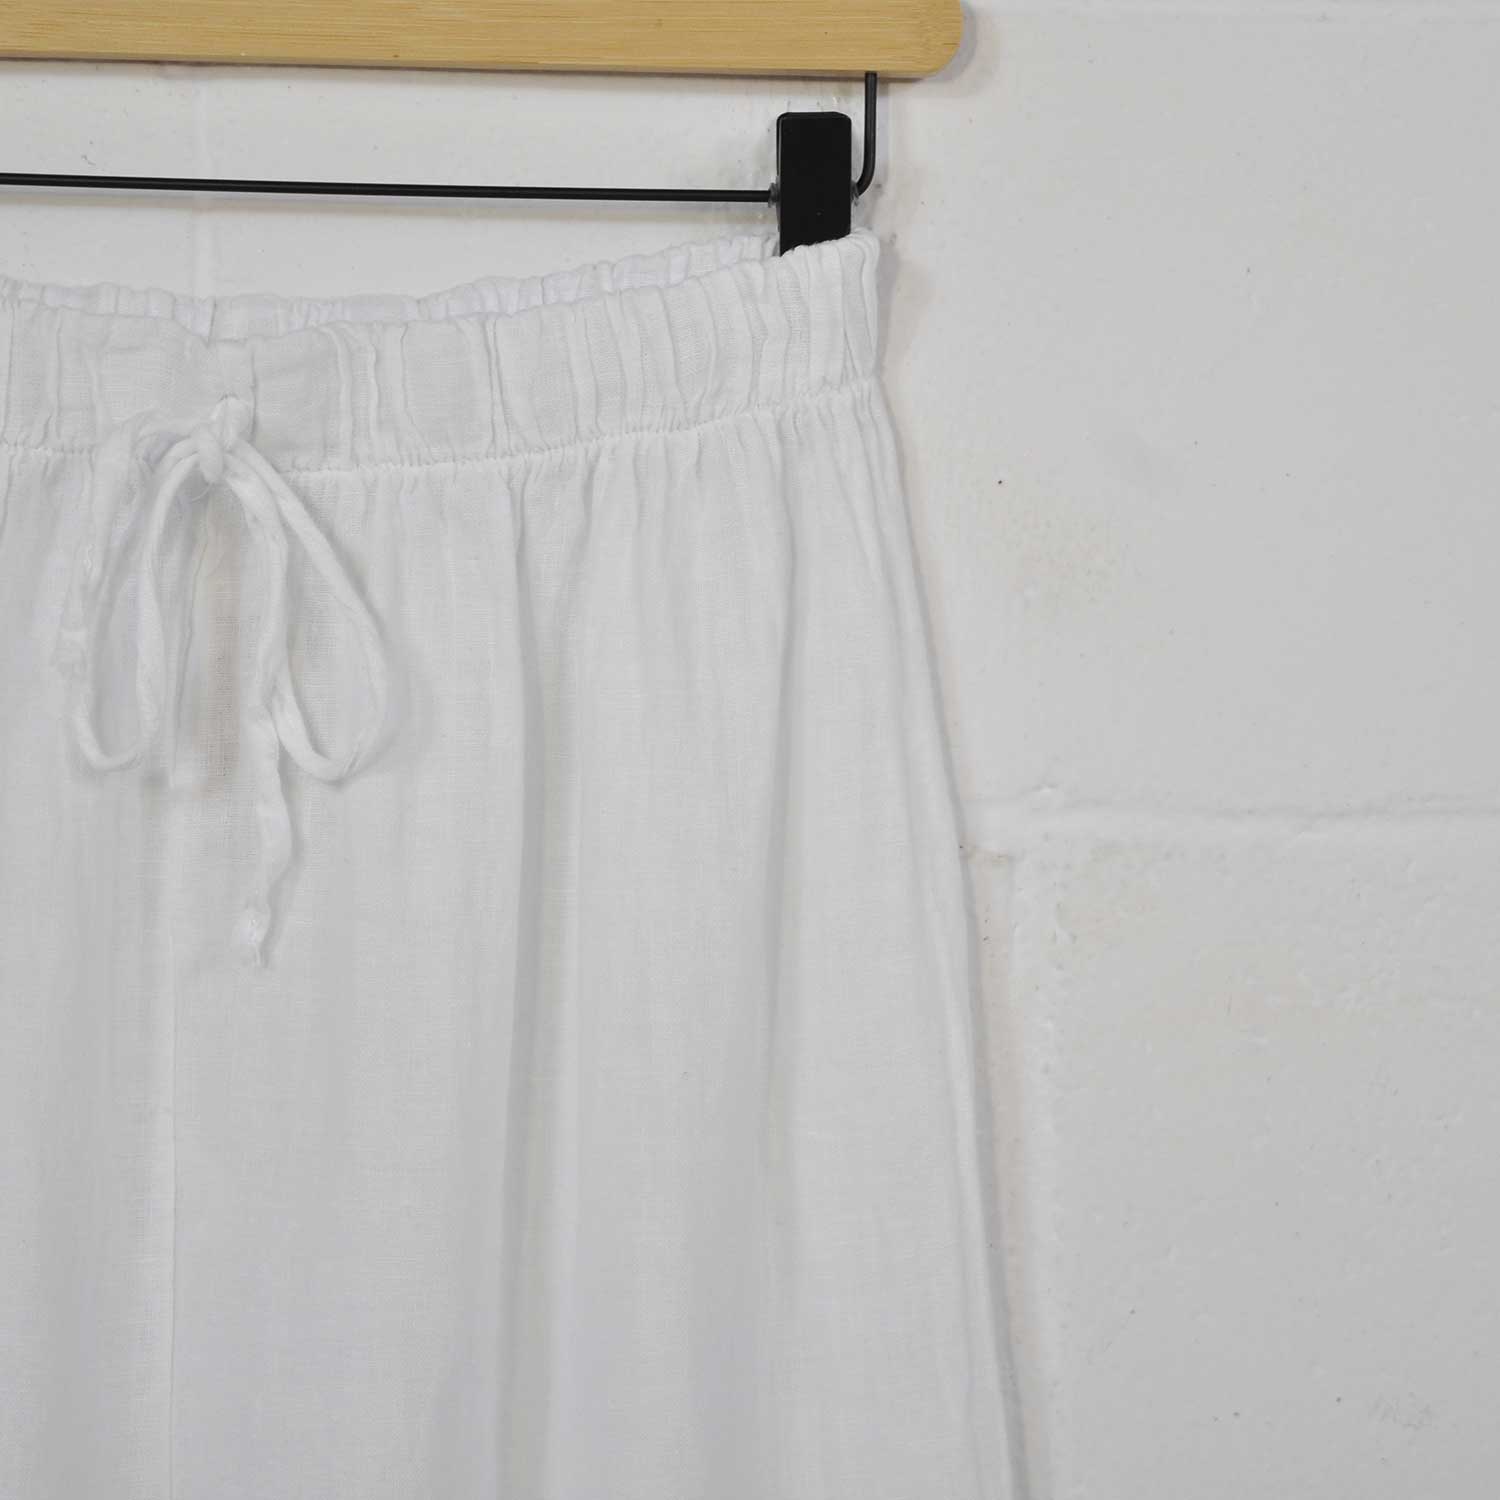 Pantalón ancho lino blanco